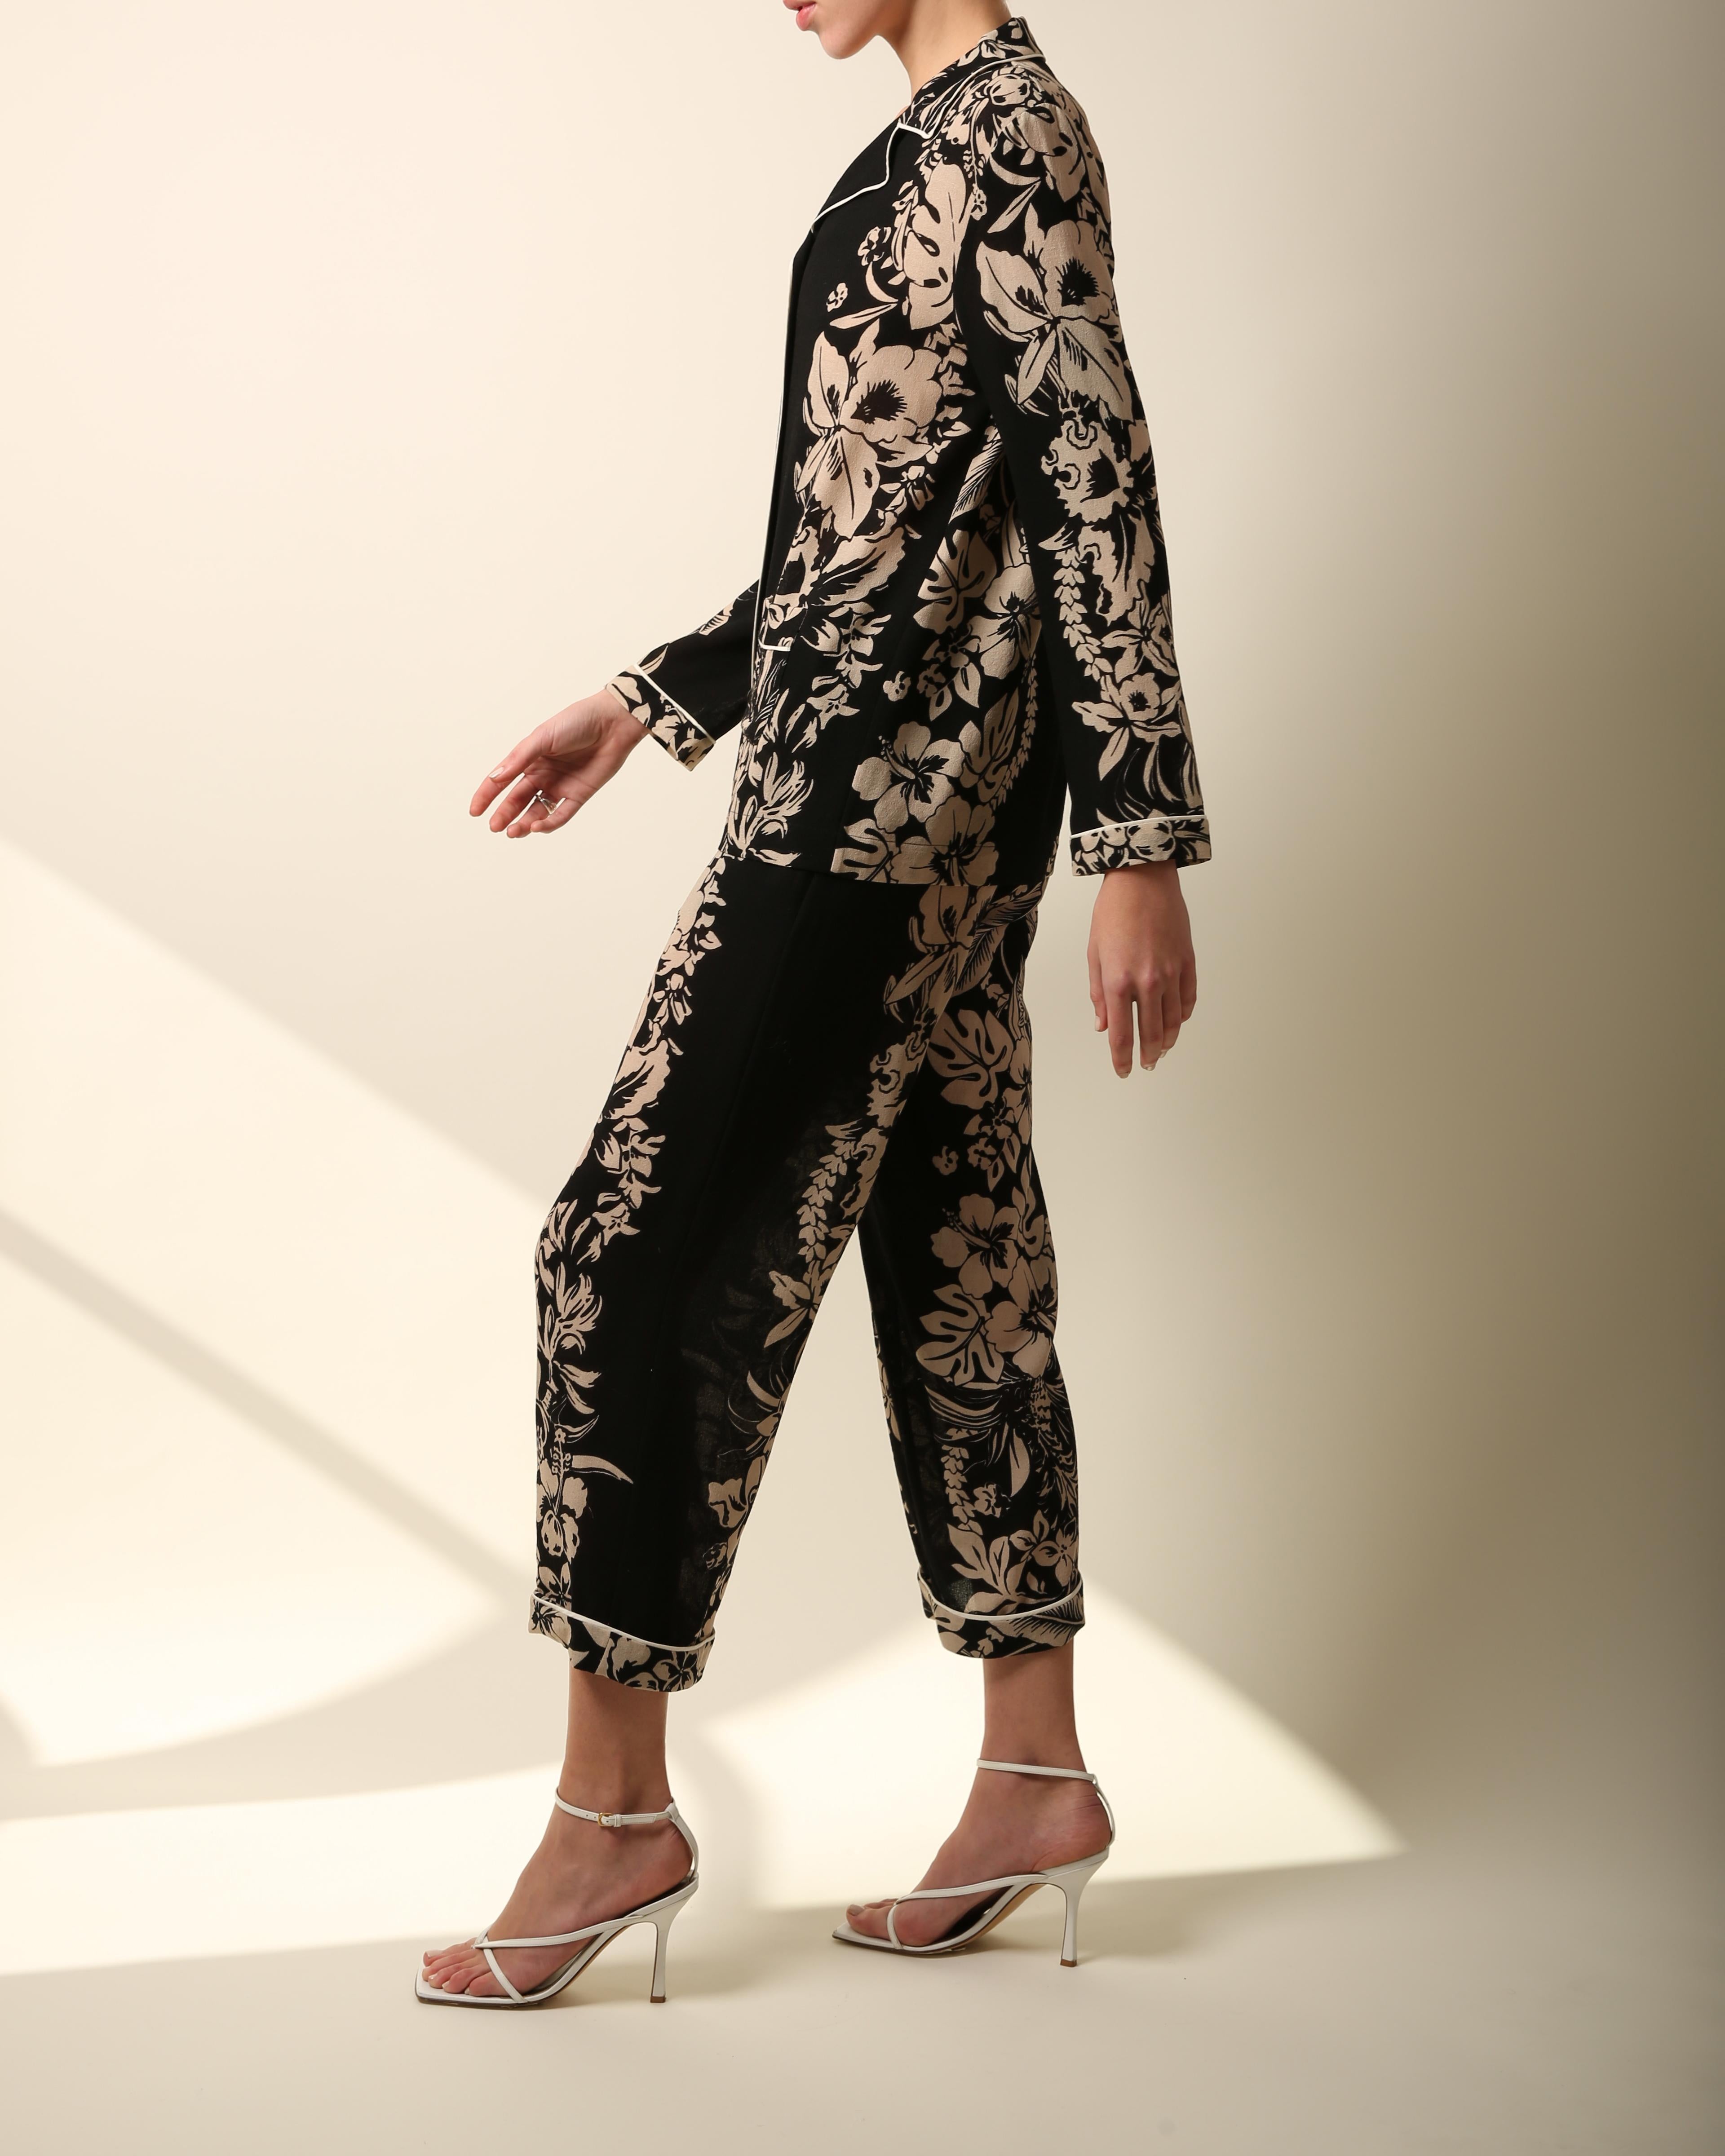 Valentino Valentino Pyjama-Stil schwarze Bluse mit Blumendruck und breiter Hose, Jumpsuit S/M 7